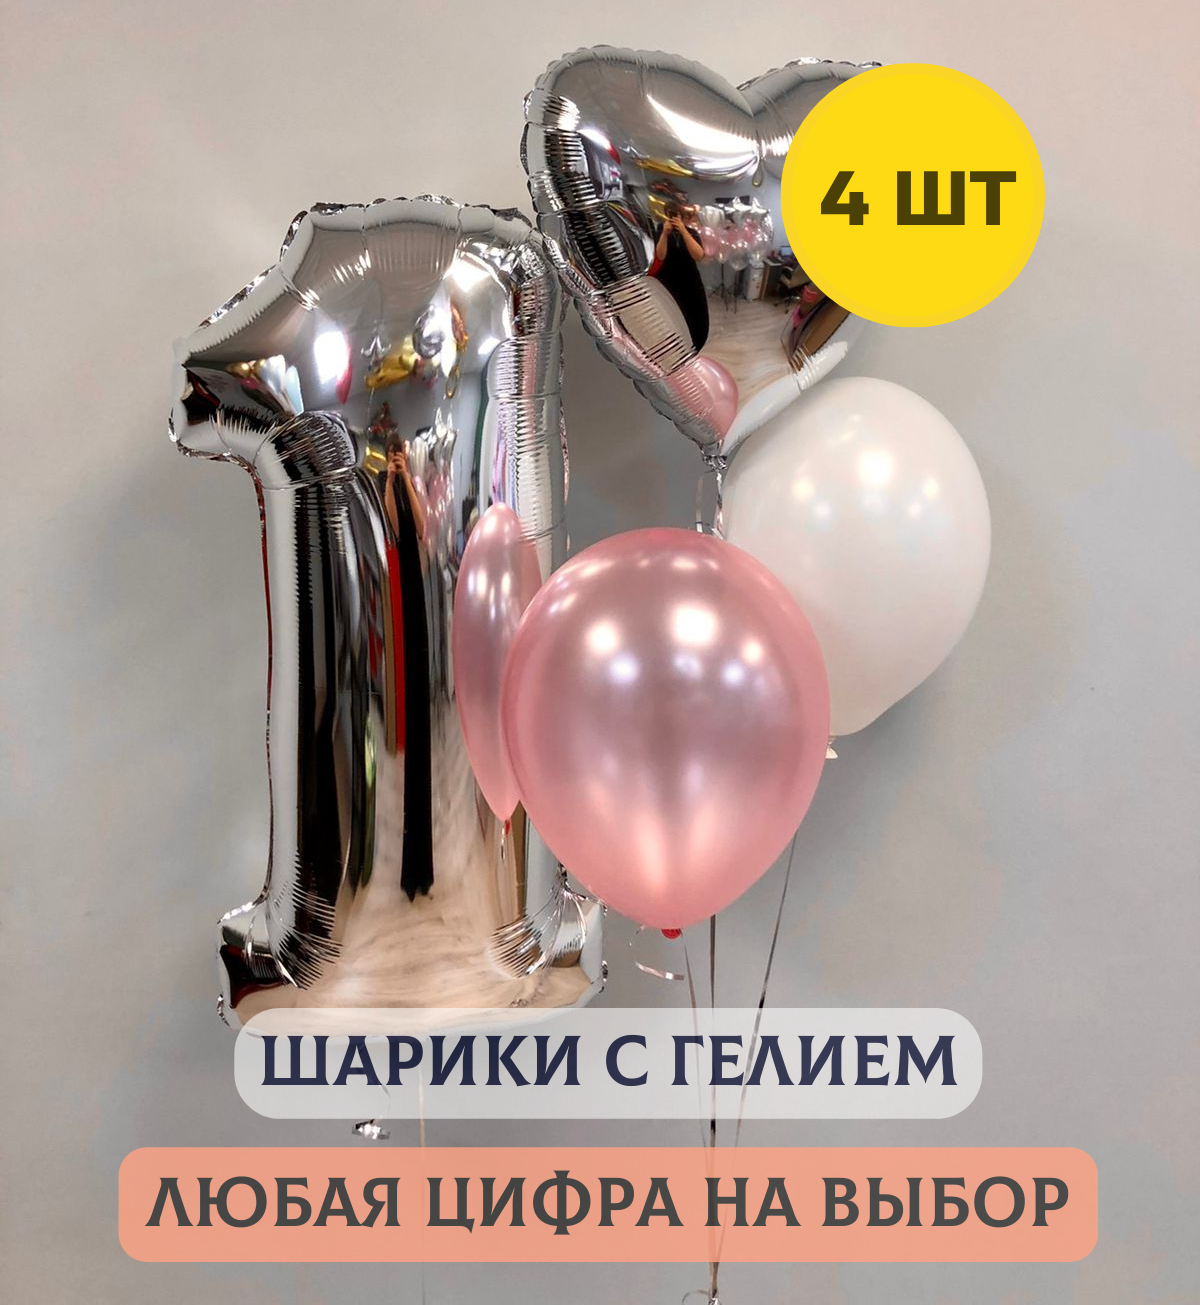 Воздушные шары с гелием "Набор шаров с любой цифрой для девочки", 4 шт.